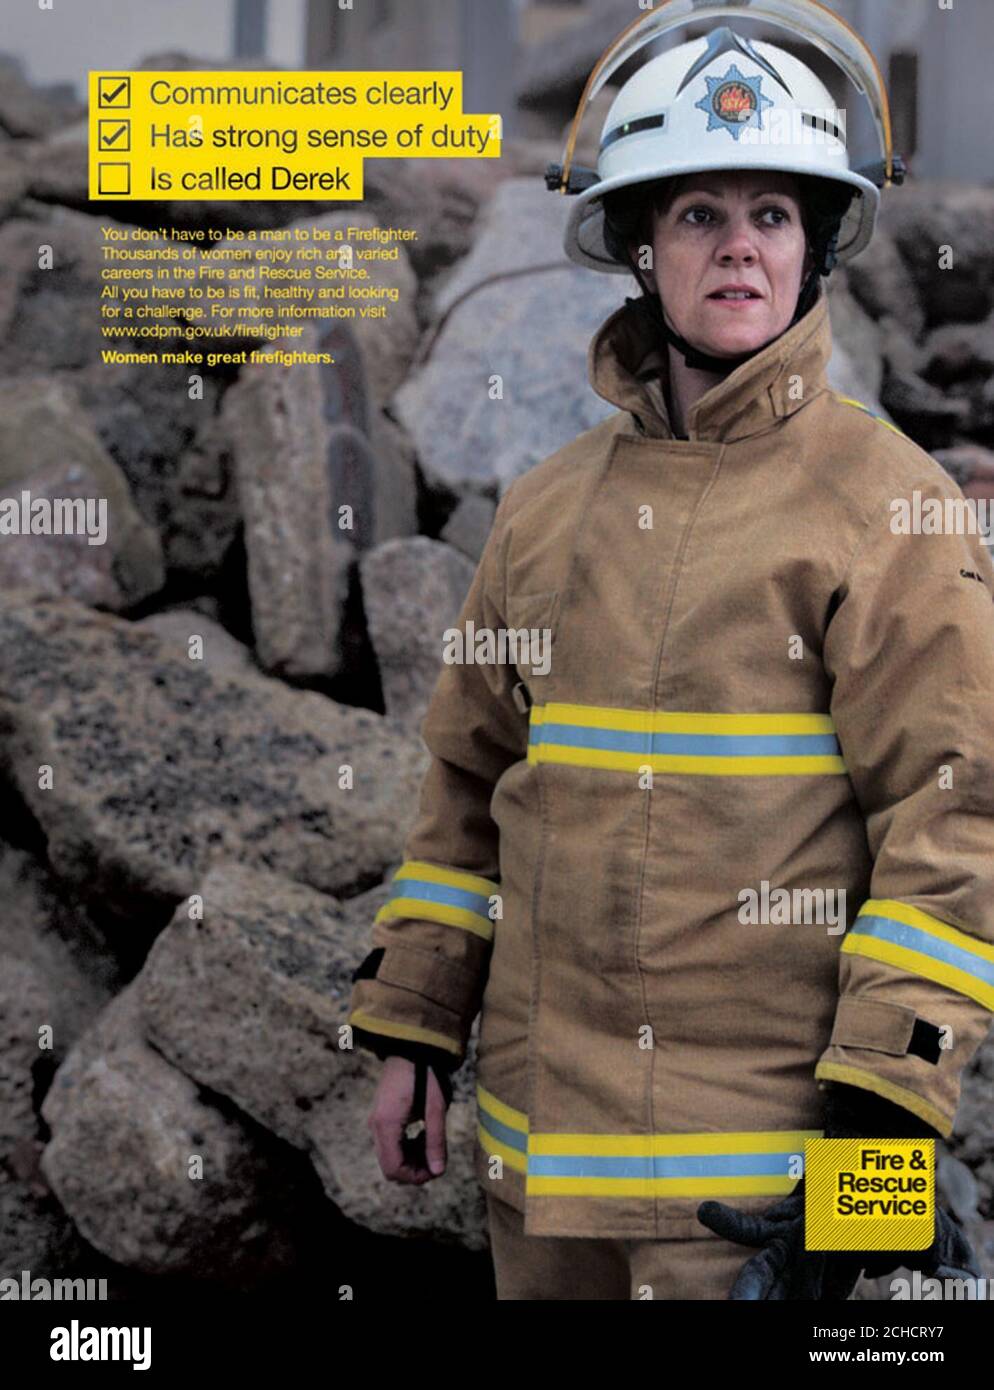 Lorraine vom Feuerwehr- und Rettungsdienst Bedfordshire & Luton, der in einer neuen nationalen Werbekampagne der Regierung aufwartet, um mehr Frauen in die Feuerwehr zu locken, und fordert sie auf, sich nicht von dem "macho-Stereotyp" eines Feuerwehrmanners abschrecken zu lassen. Stockfoto